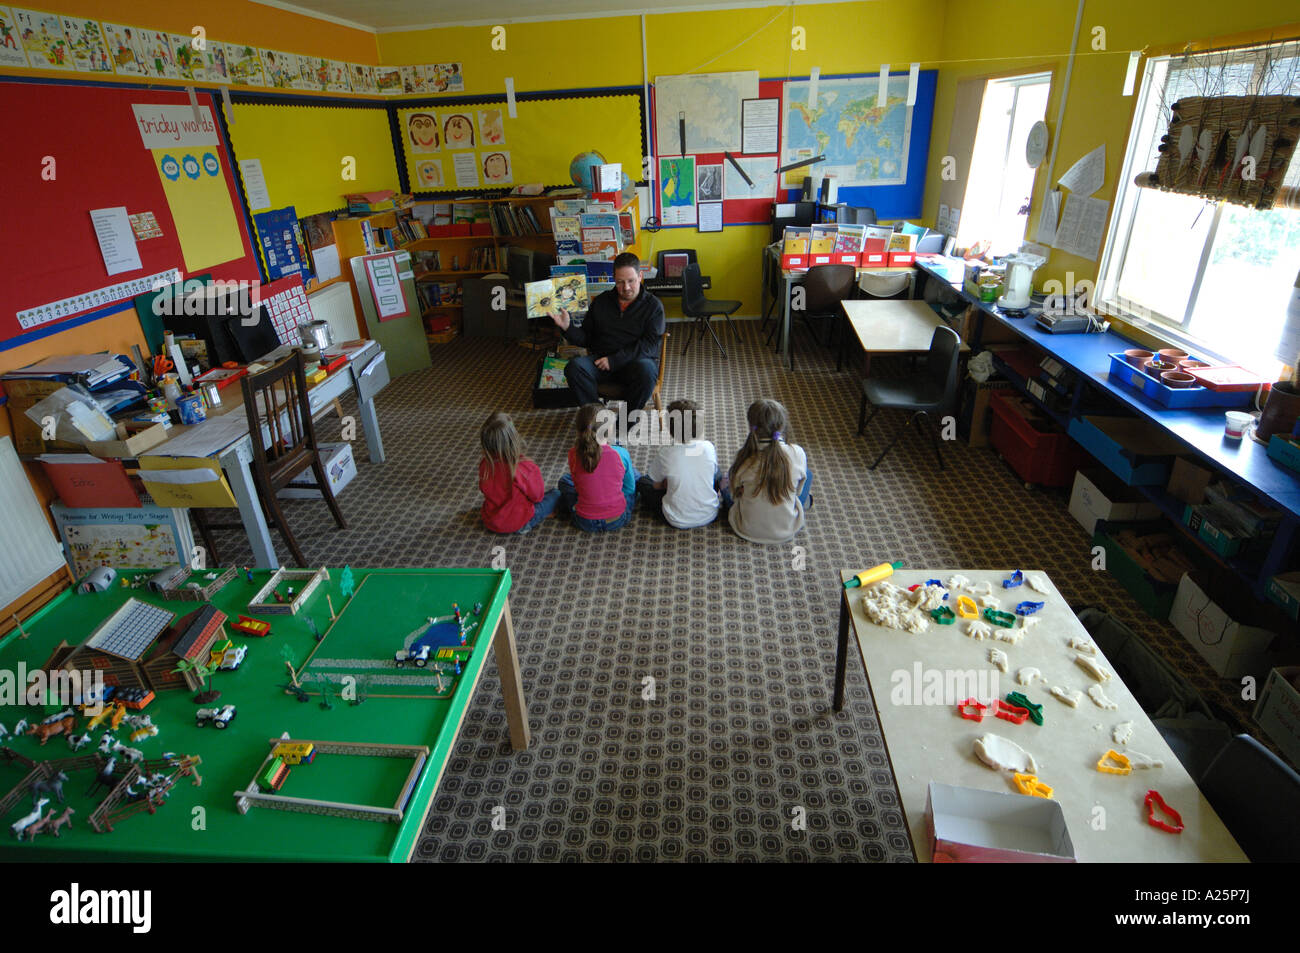 La guerre des îles Falkland anniversaire scolarité école classe classe rurale apprendre enseigner l'apprentissage de l'enseignement enseignant étudiant élève Banque D'Images